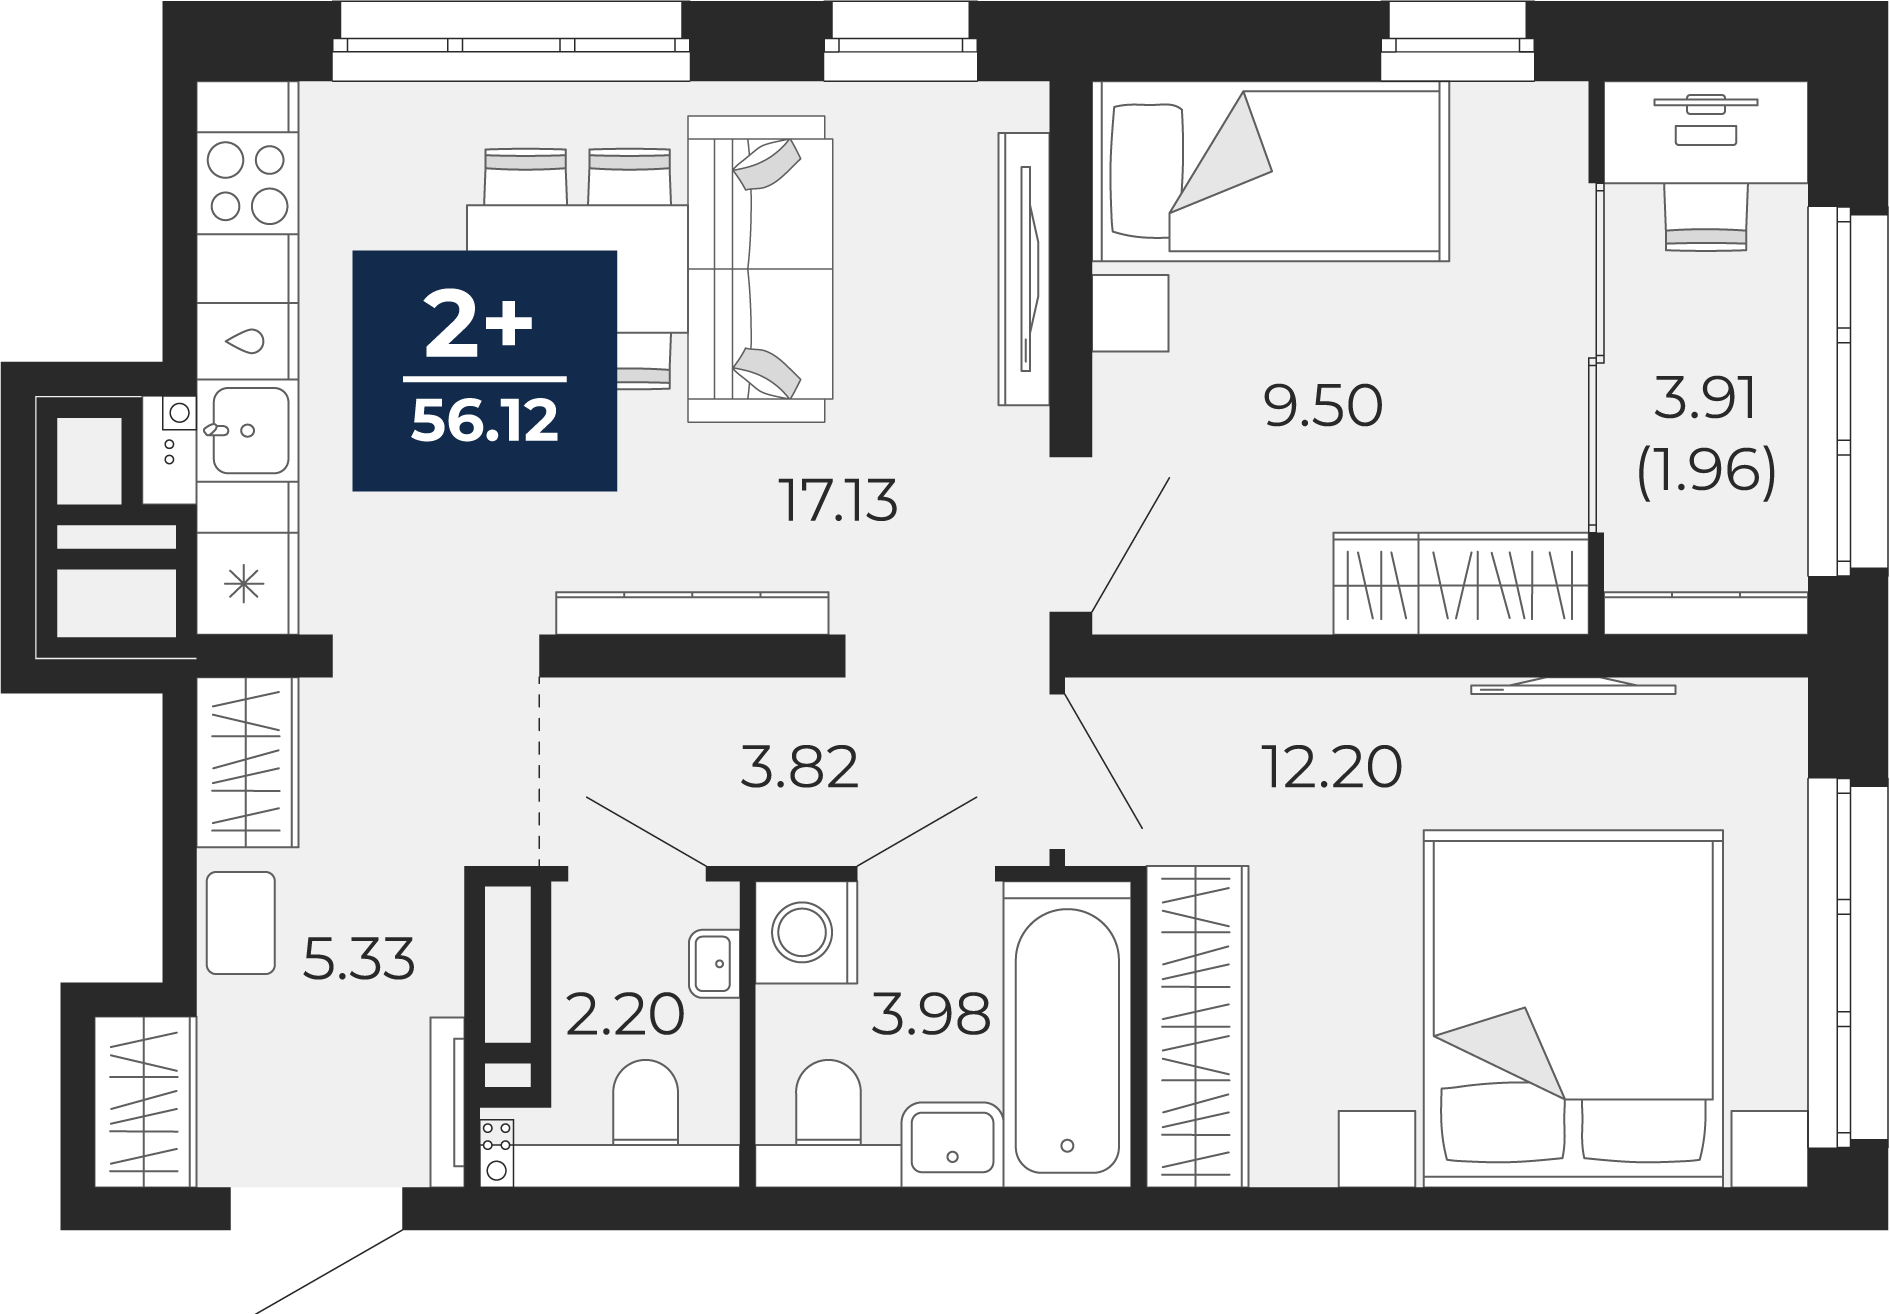 Квартира № 98, 2-комнатная, 56.12 кв. м, 6 этаж